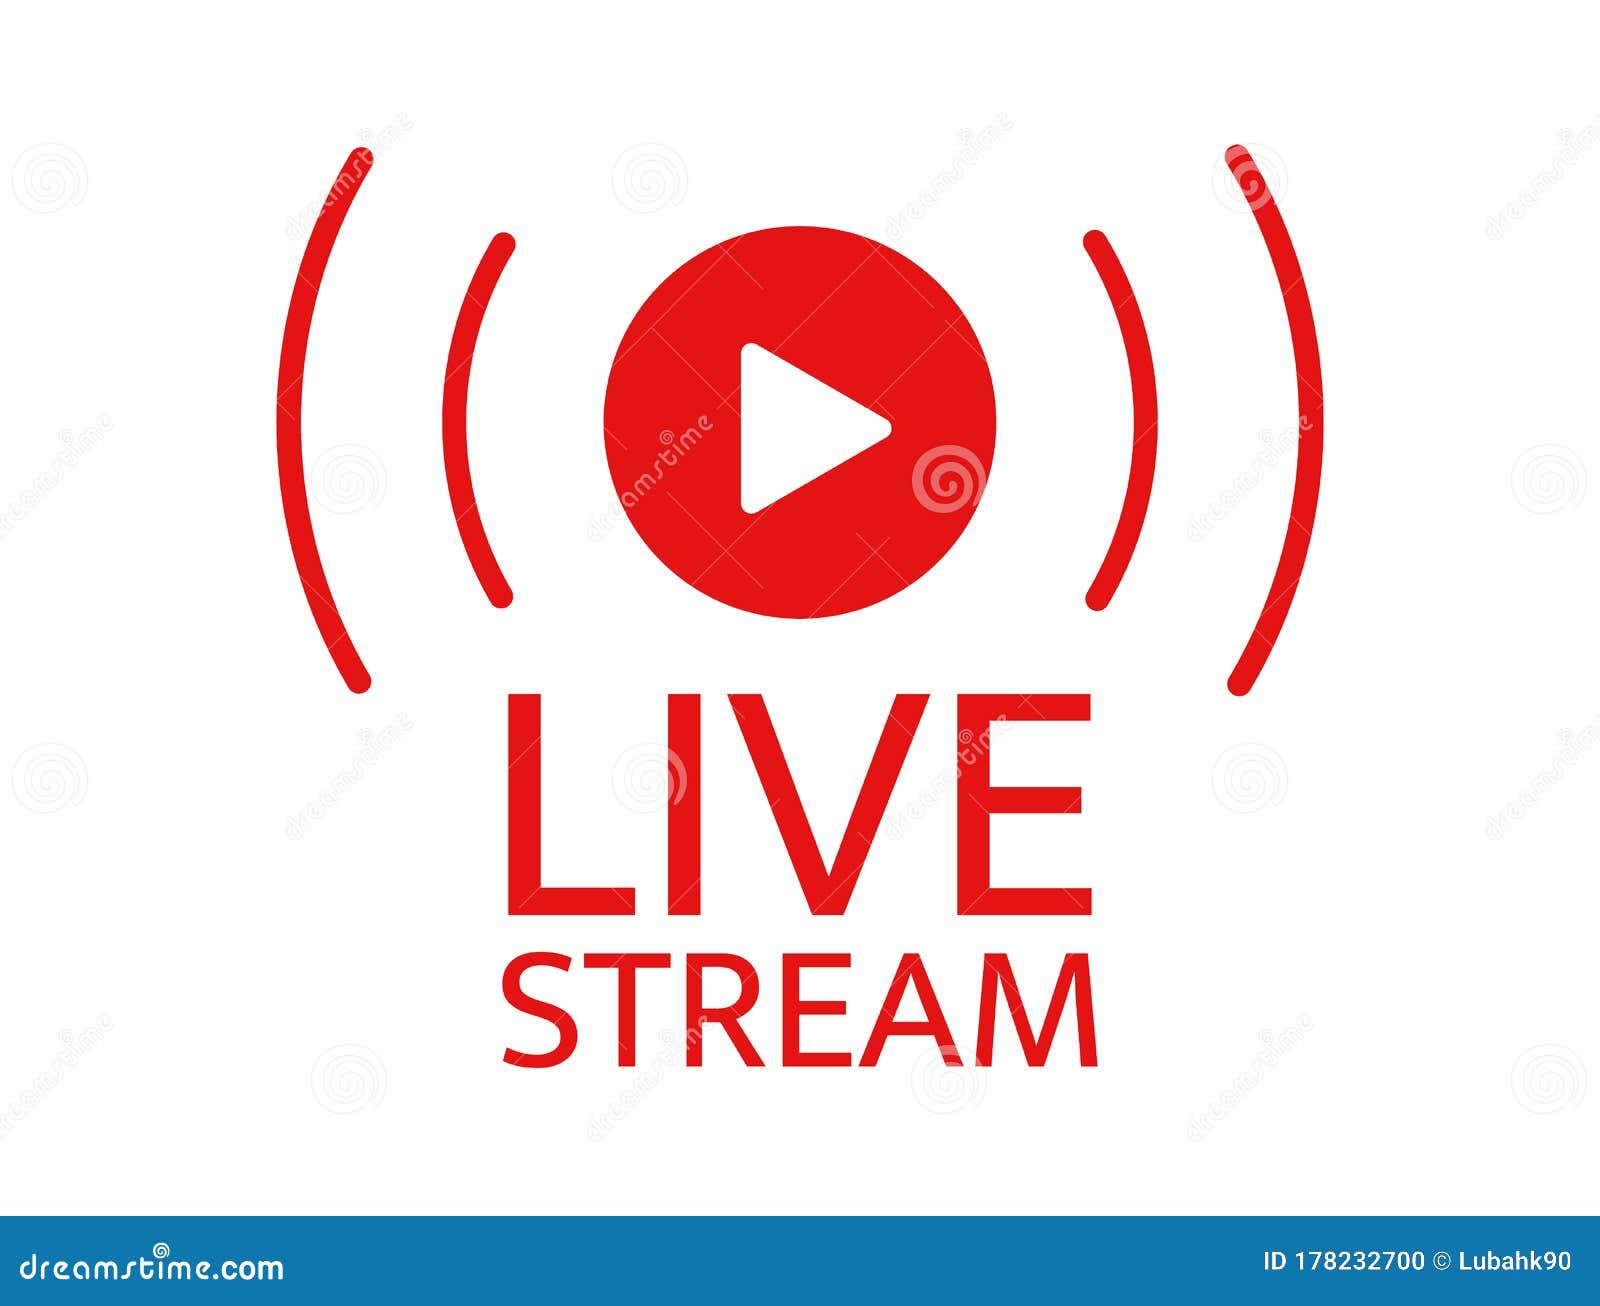 Stream Cnbc Live Free